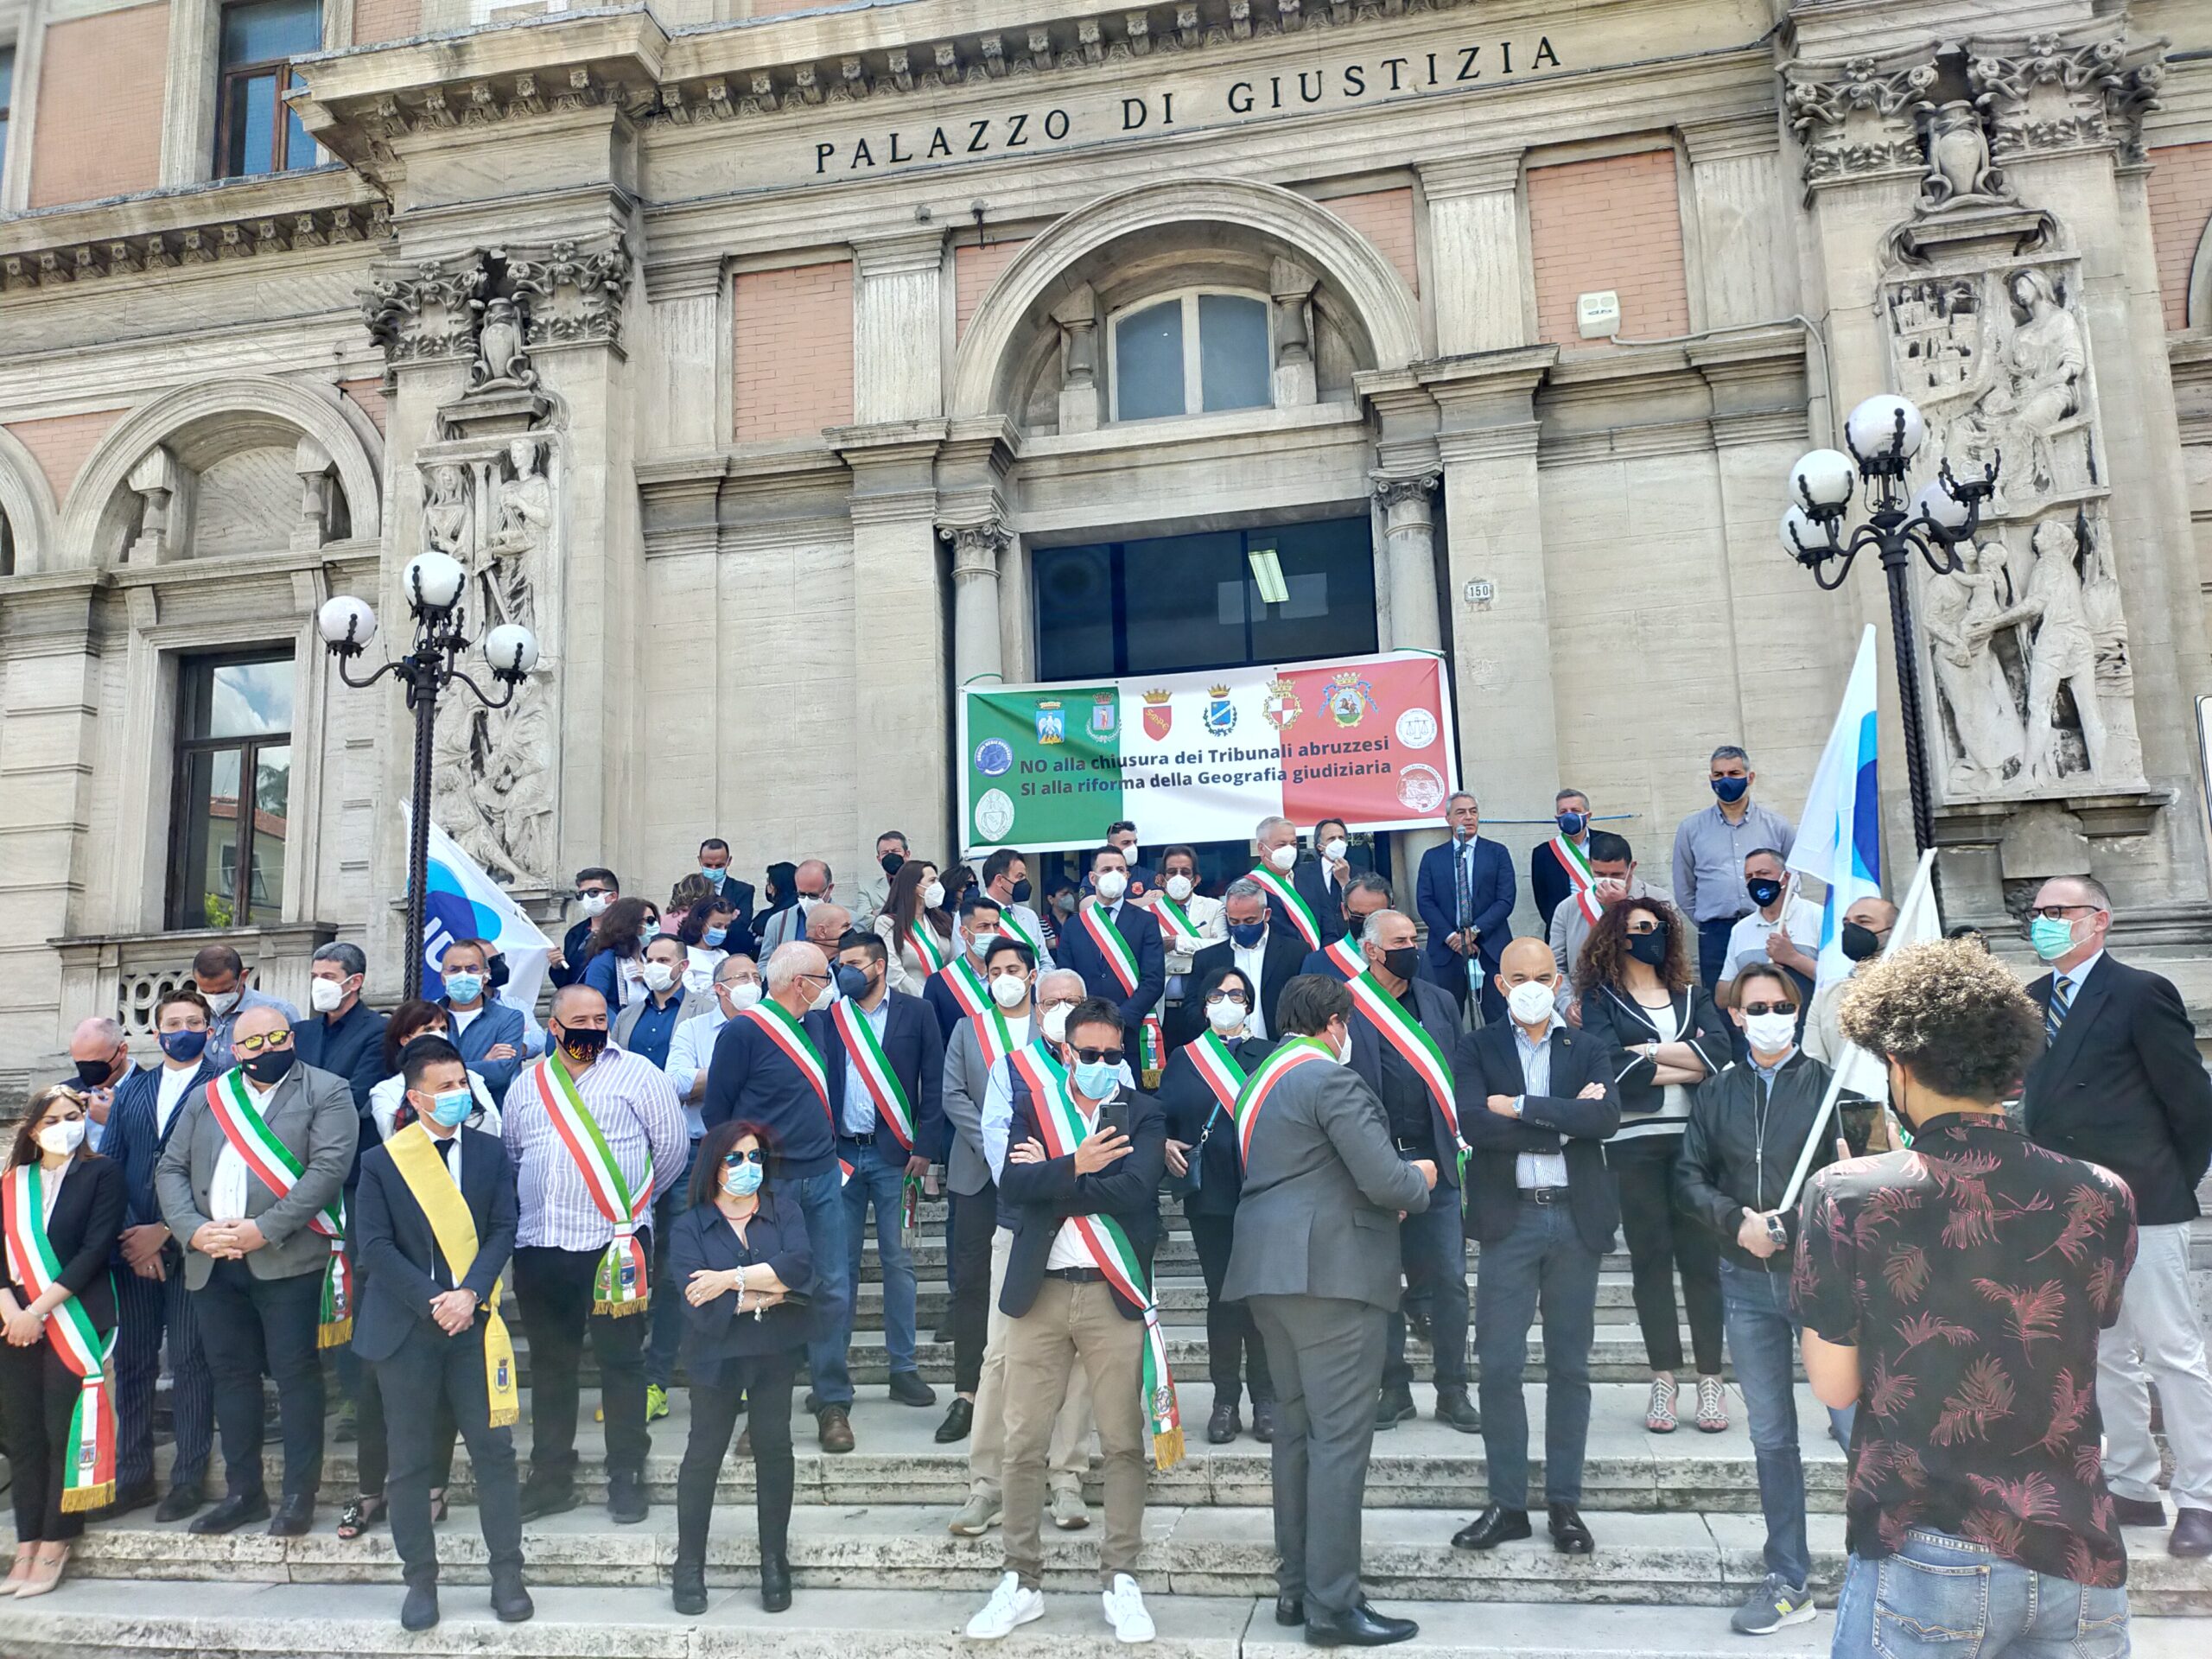 La Riforma Giustizia: una svolta epocale per l’Italia?